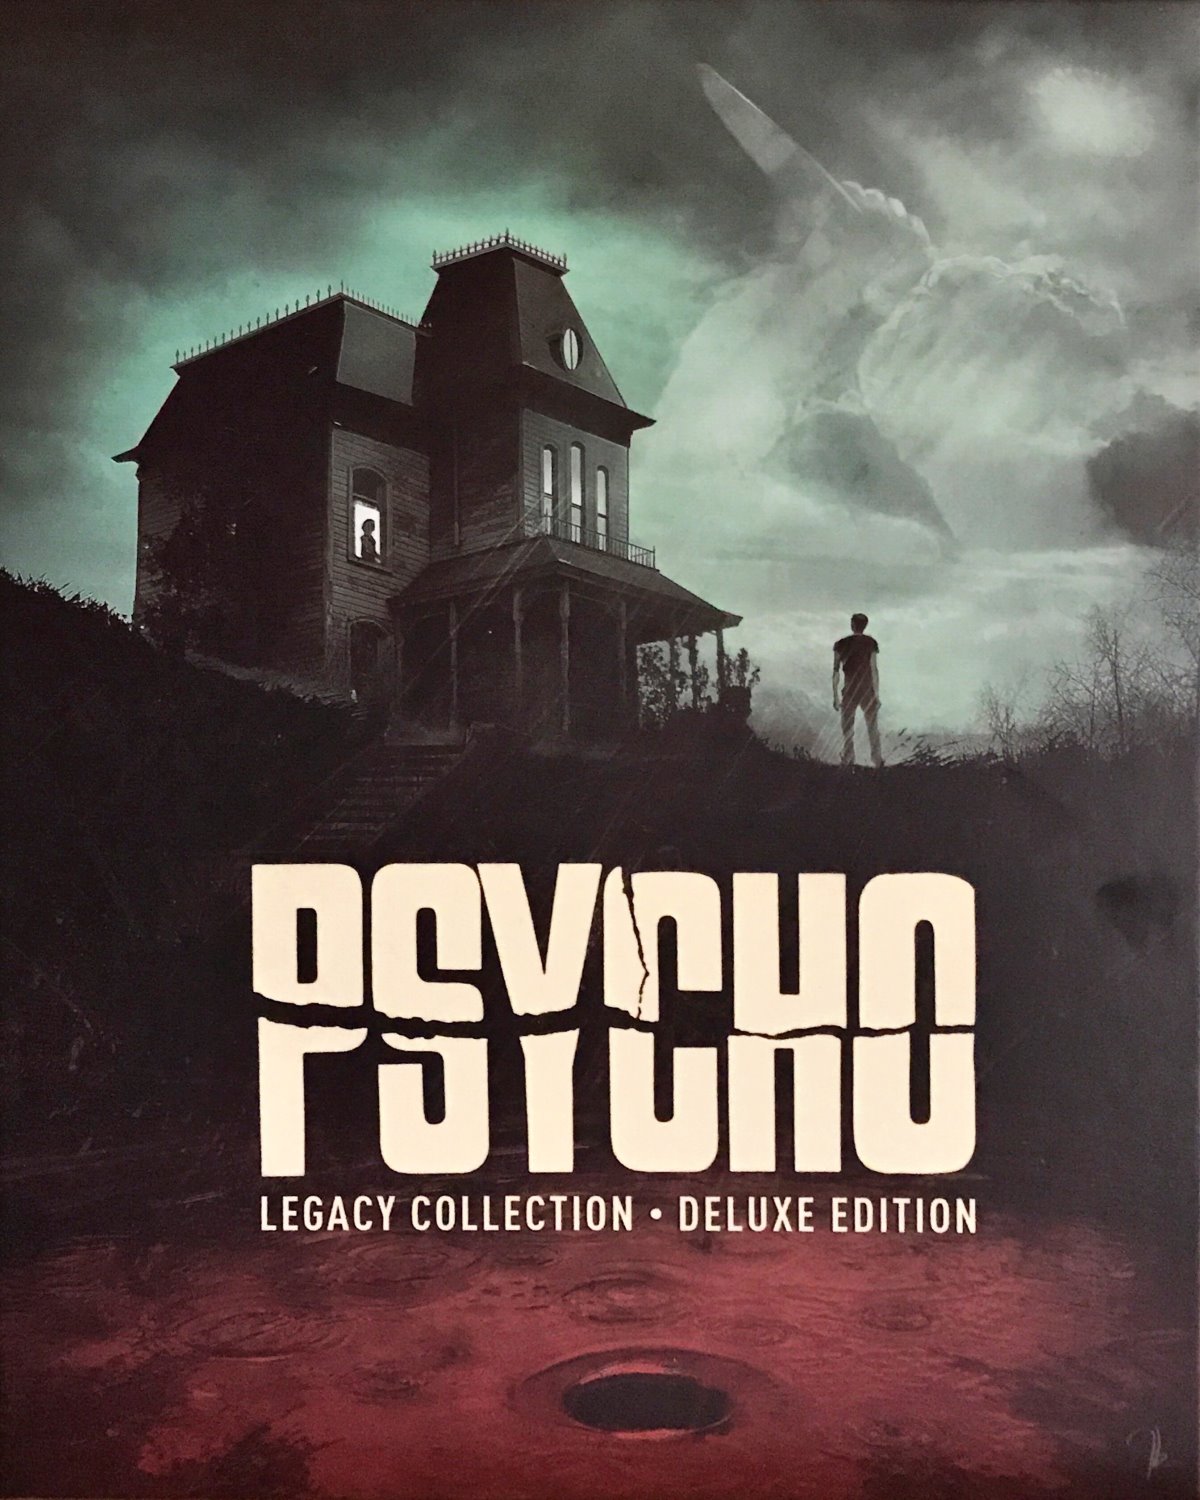 Cover - Psycho.jpg